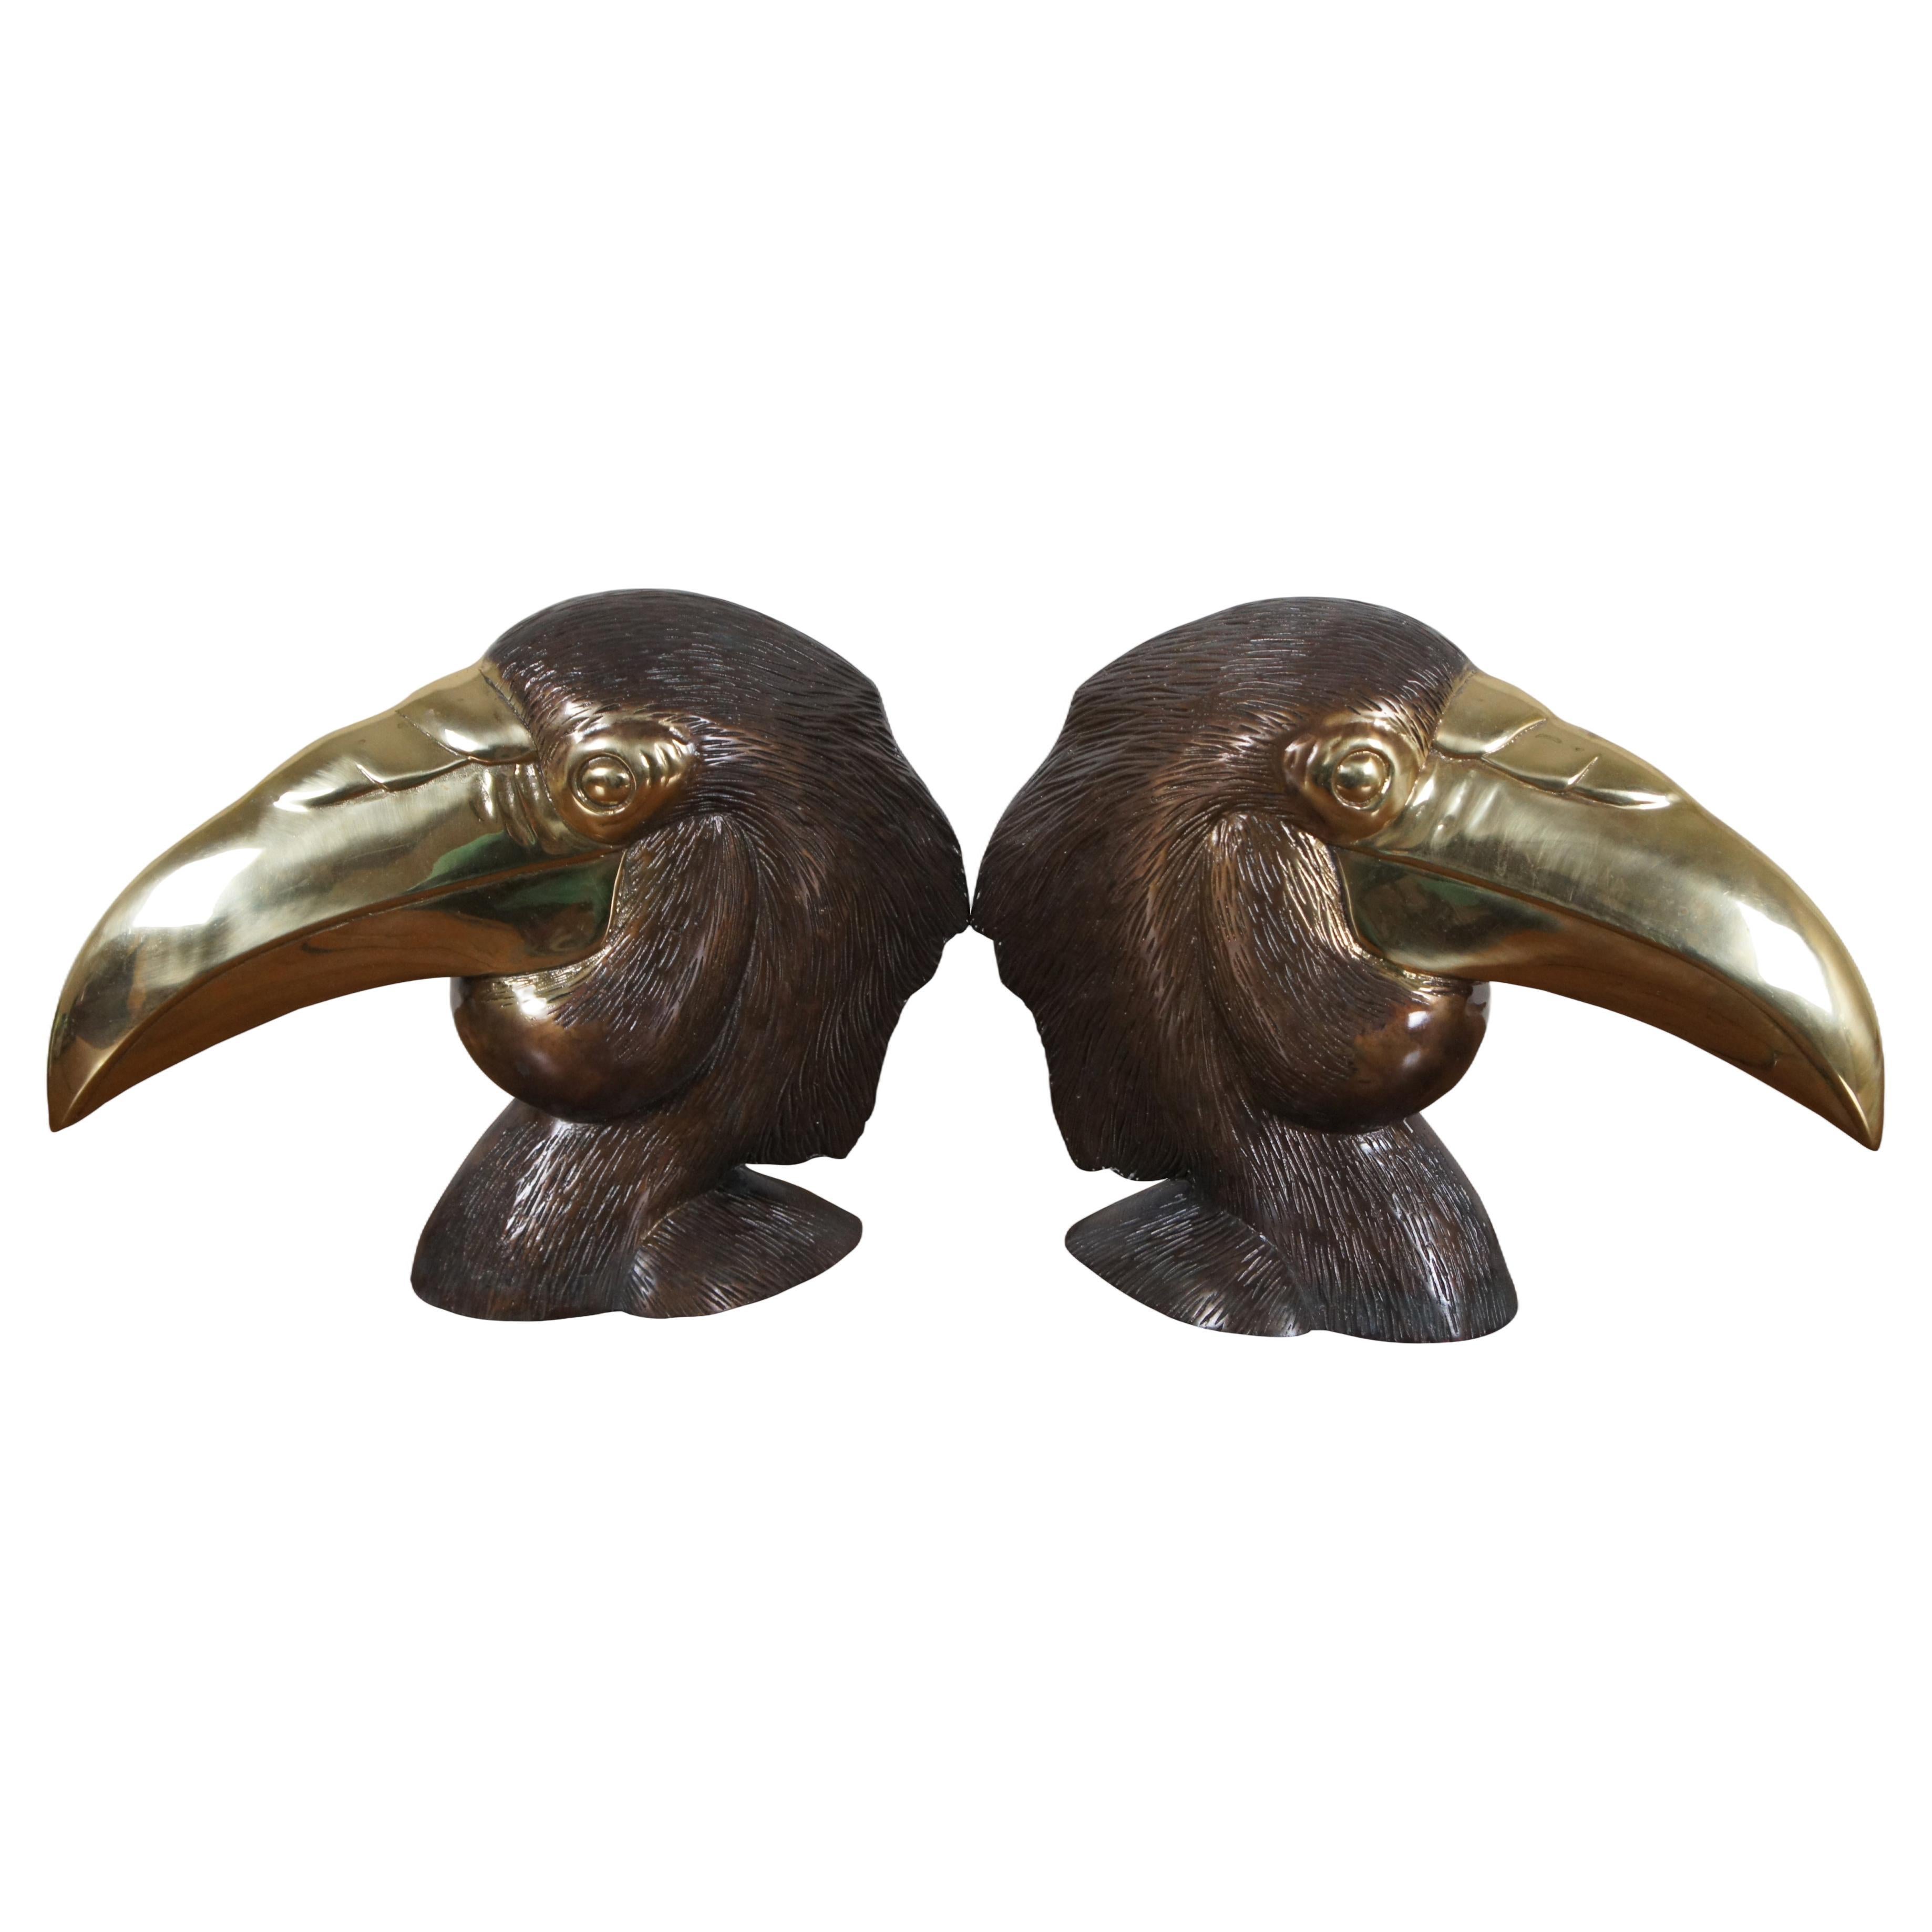 2 Mid Century Brass Hornbill Toucan Bird Head Sculptures Statues Bookends 13"